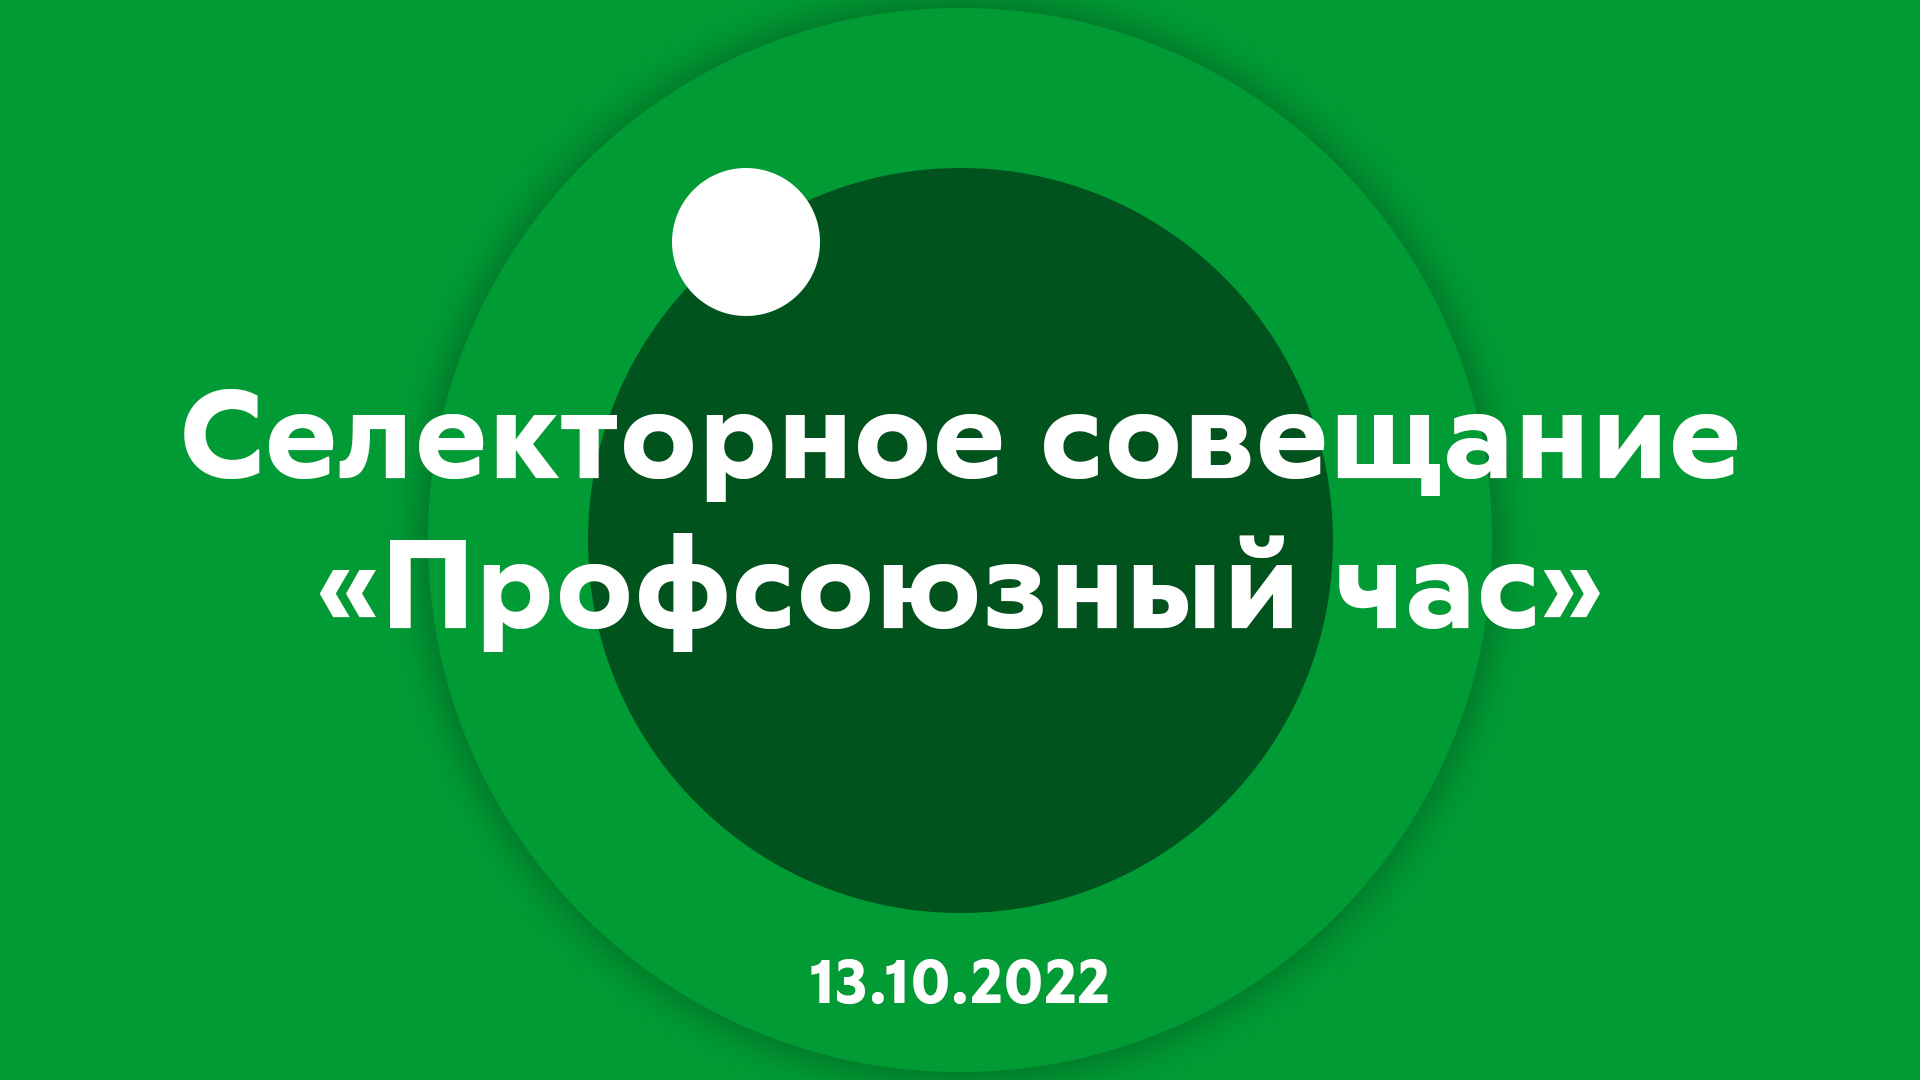 Селекторное совещание "Профсоюзный час" 13.10.2022